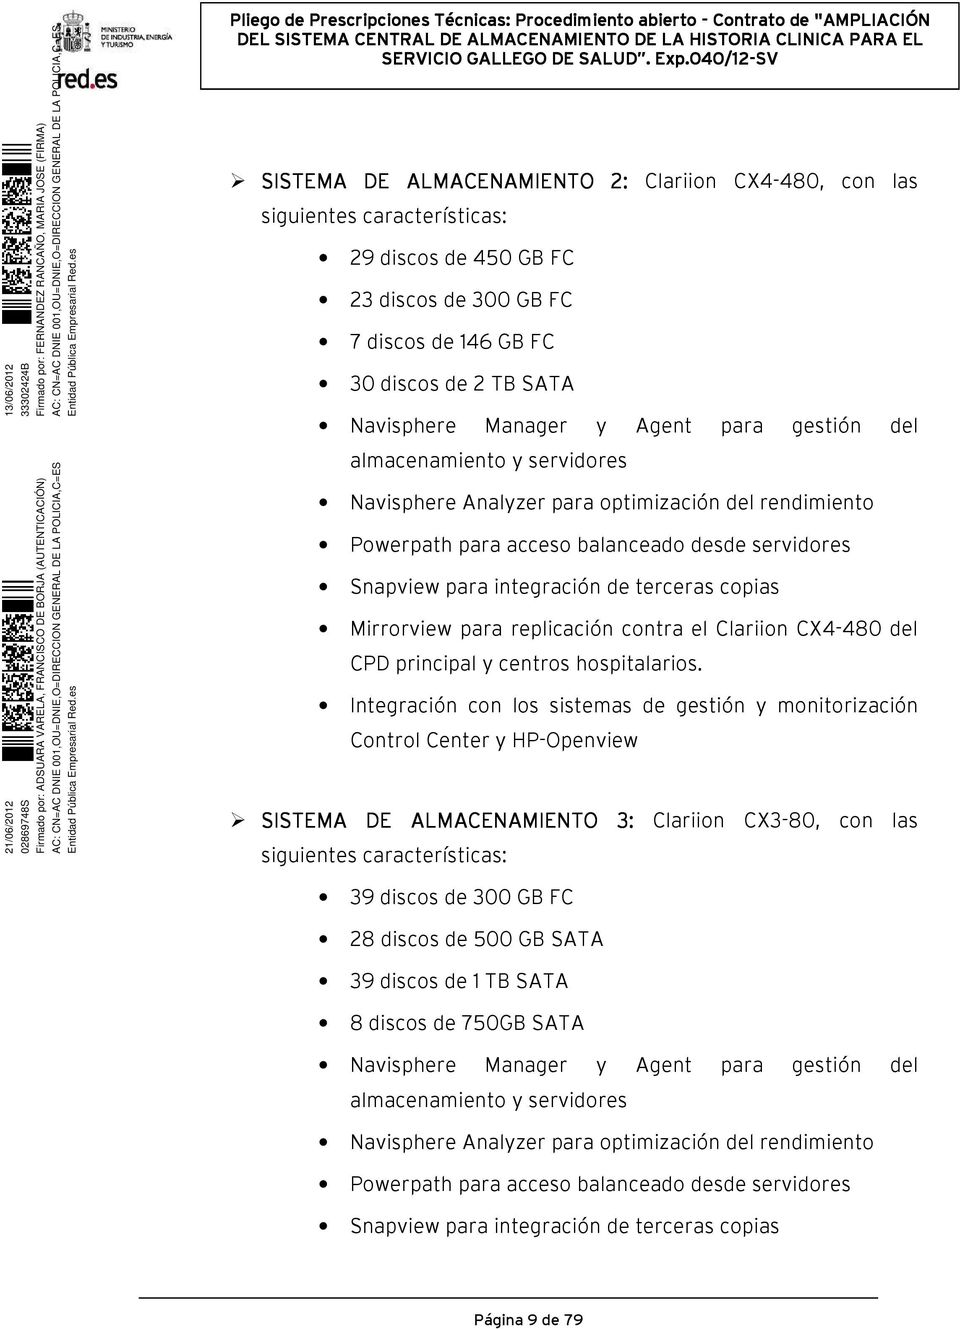 Mirrorview para replicación contra el Clariion CX4-480 del CPD principal y centros hospitalarios.